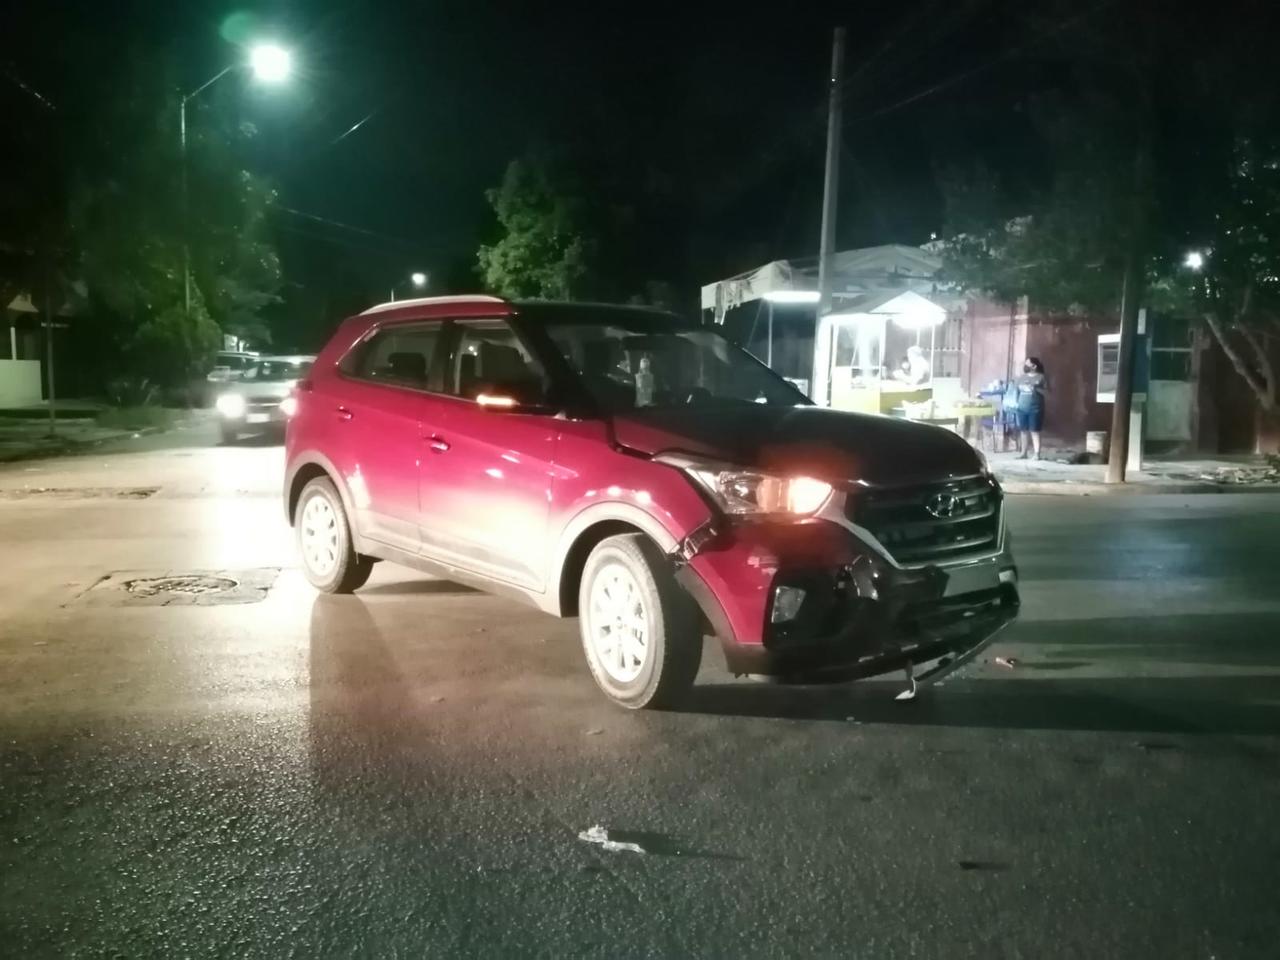 La conductora de una camioneta no respetó el alto y chocó contra otra unidad, provocando daños a ambos vehículos valorados en 60 mil pesos.
